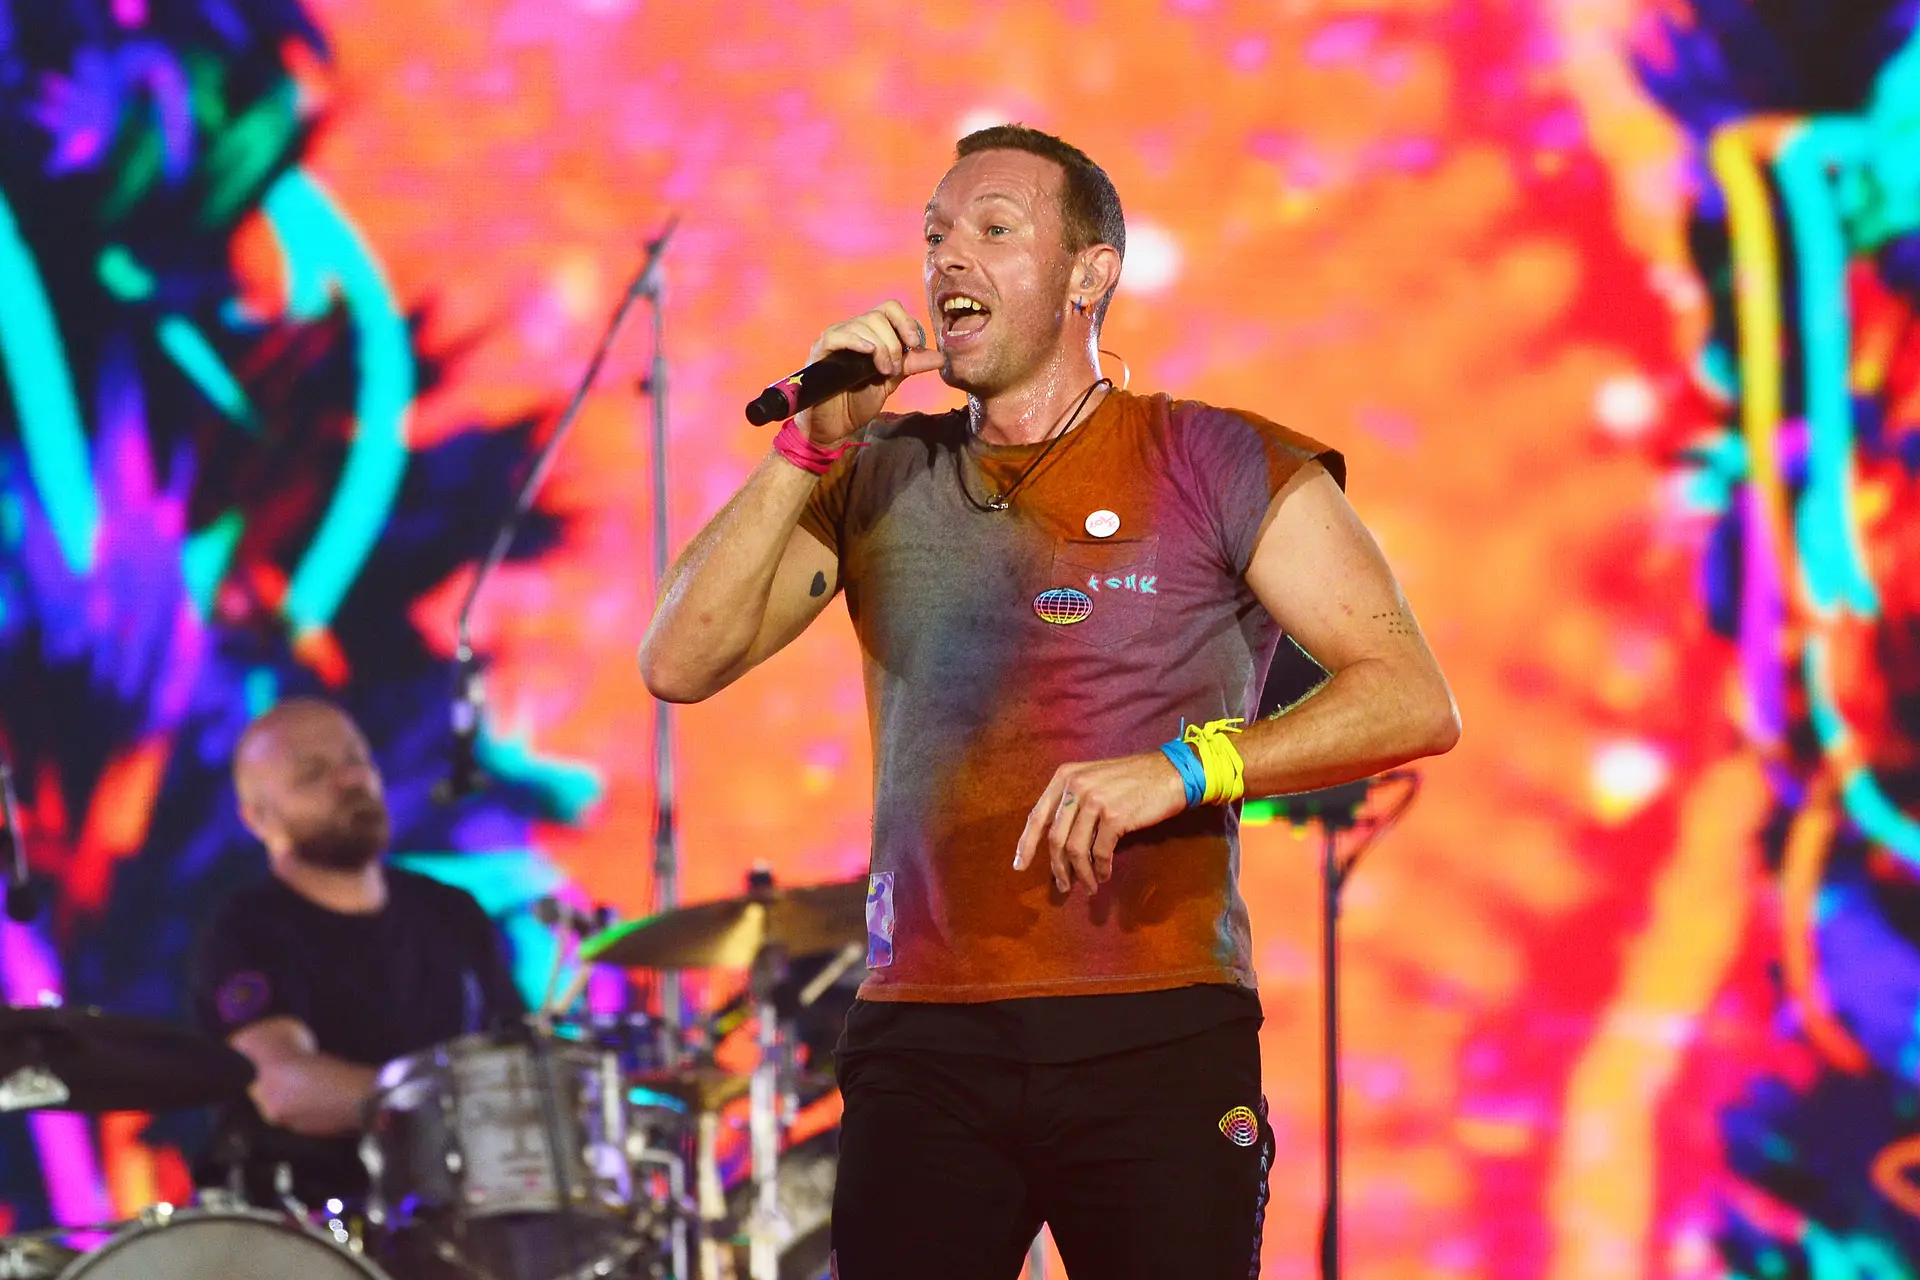 Concerto dos Coldplay em Coimbra esgotado. Nova data anunciada: 18 de maio de 2023